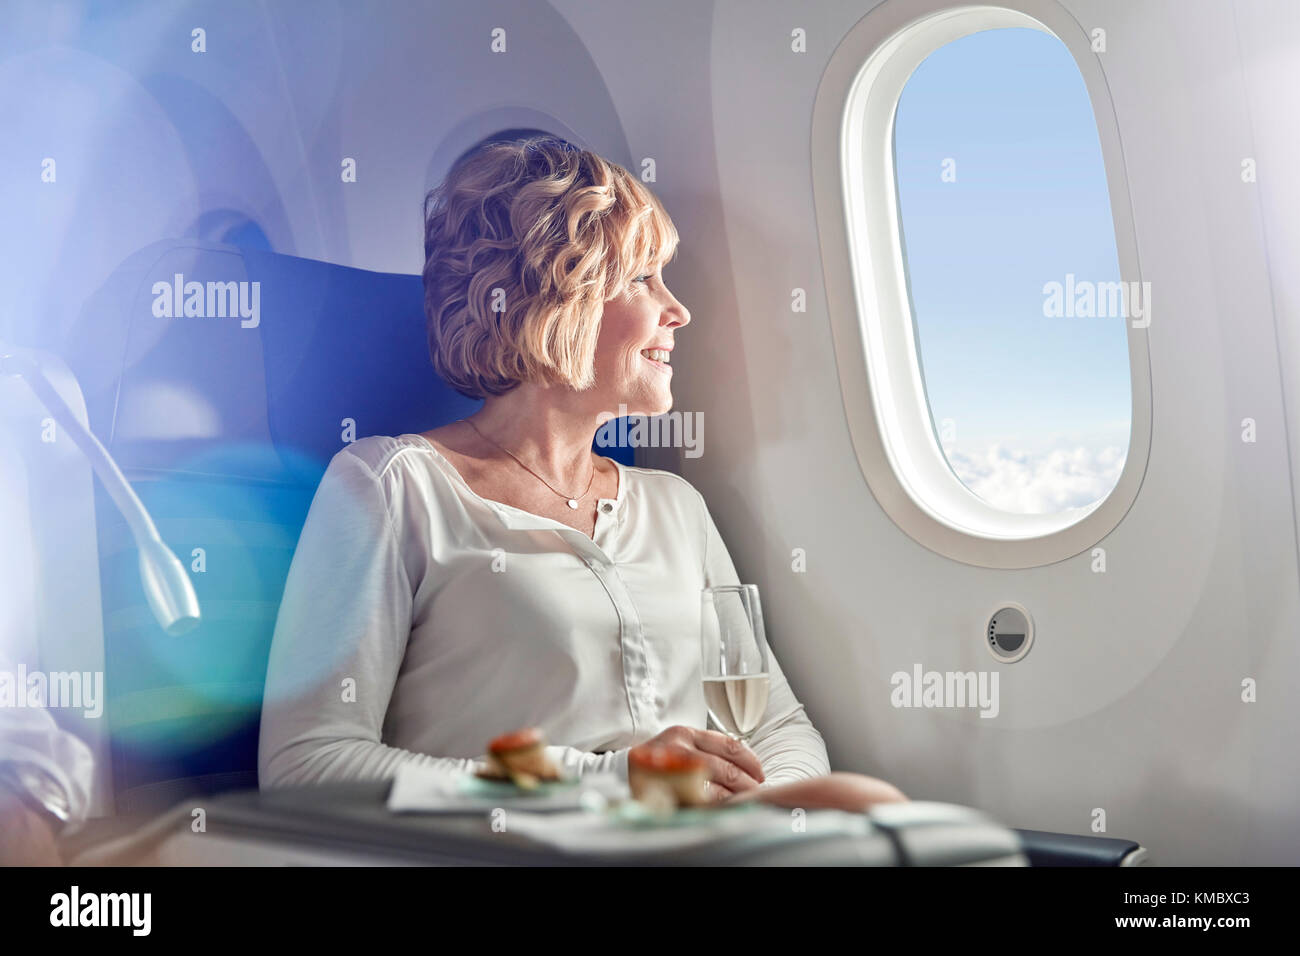 Lächelnde Frau, die Champagner trinkt, First Class reist und aus dem Flugzeugfenster schaut Stockfoto